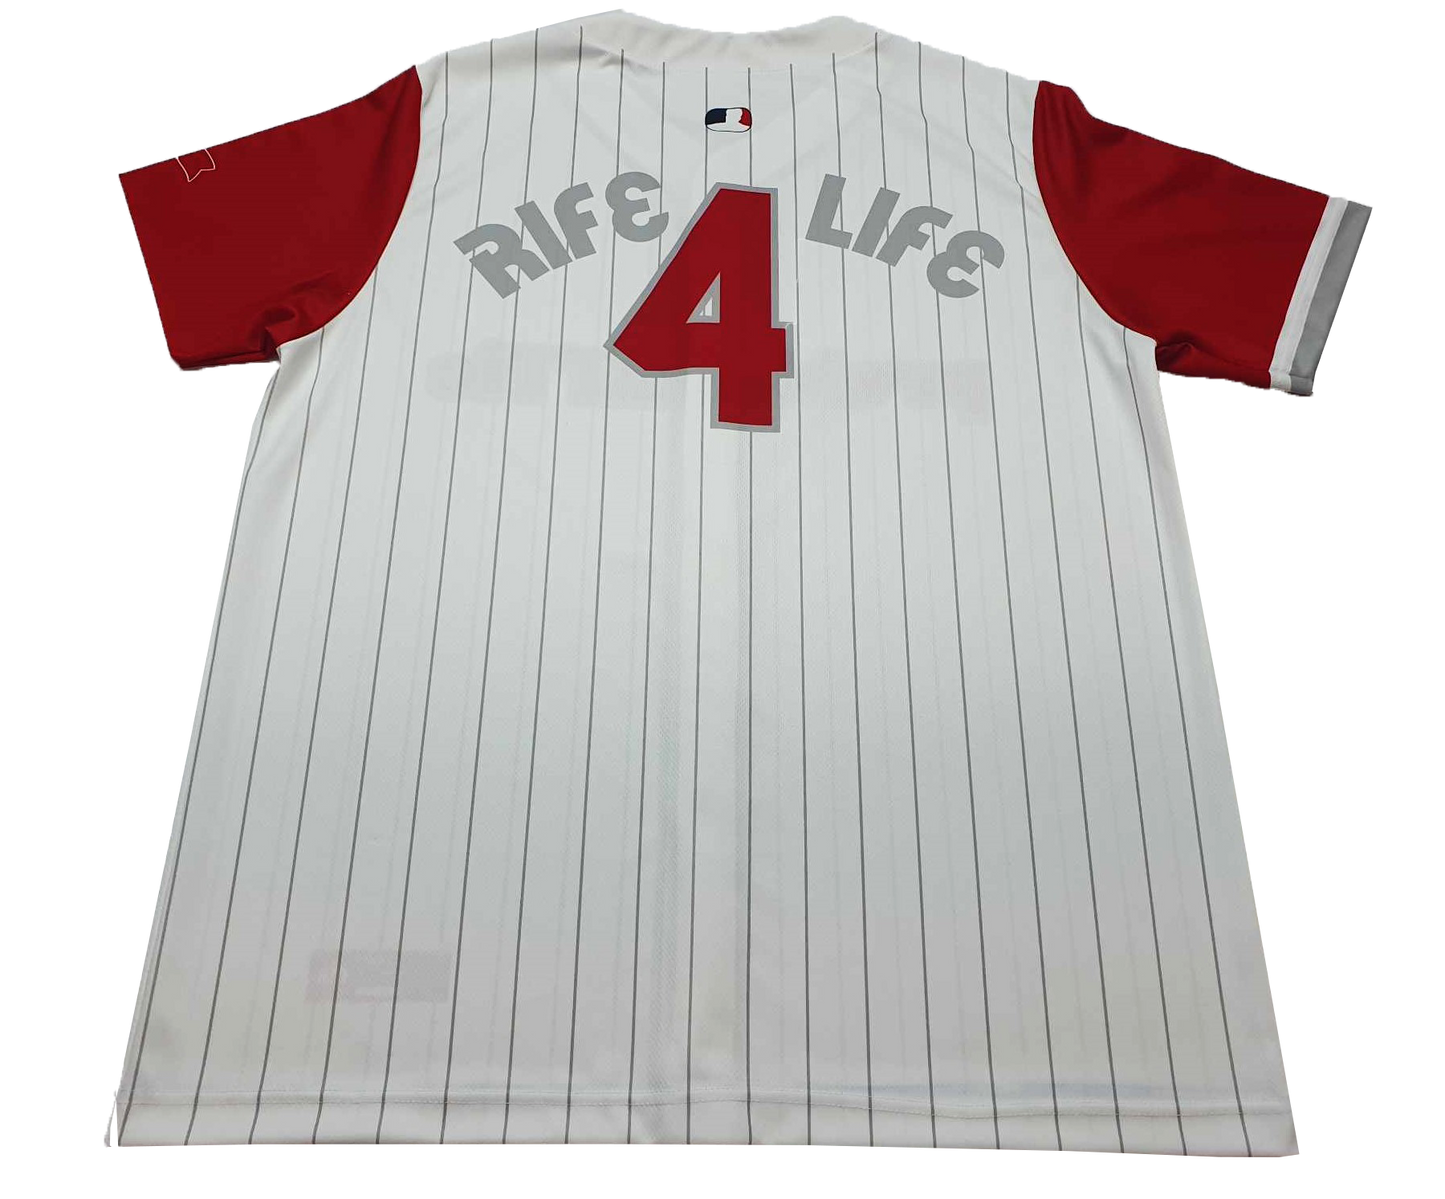 Rife 4 Life - Baseball Jersey